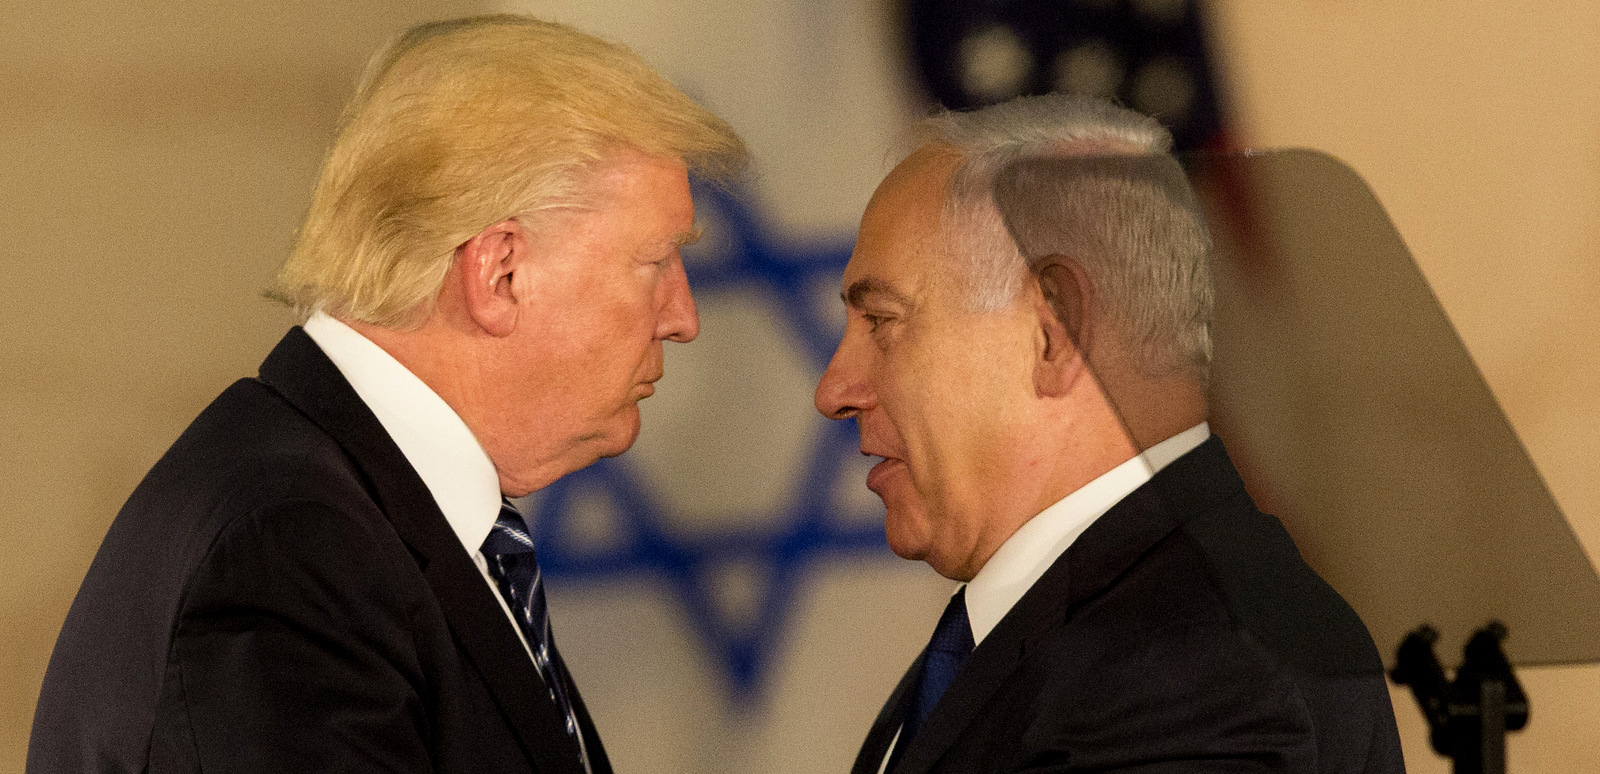 US President Donald Trump and Israeli Prime Minister Benjamin Netanyahu embrace at the Israel museum in Jerusalem, May 23, 2017. (AP/Sebastian Scheiner)